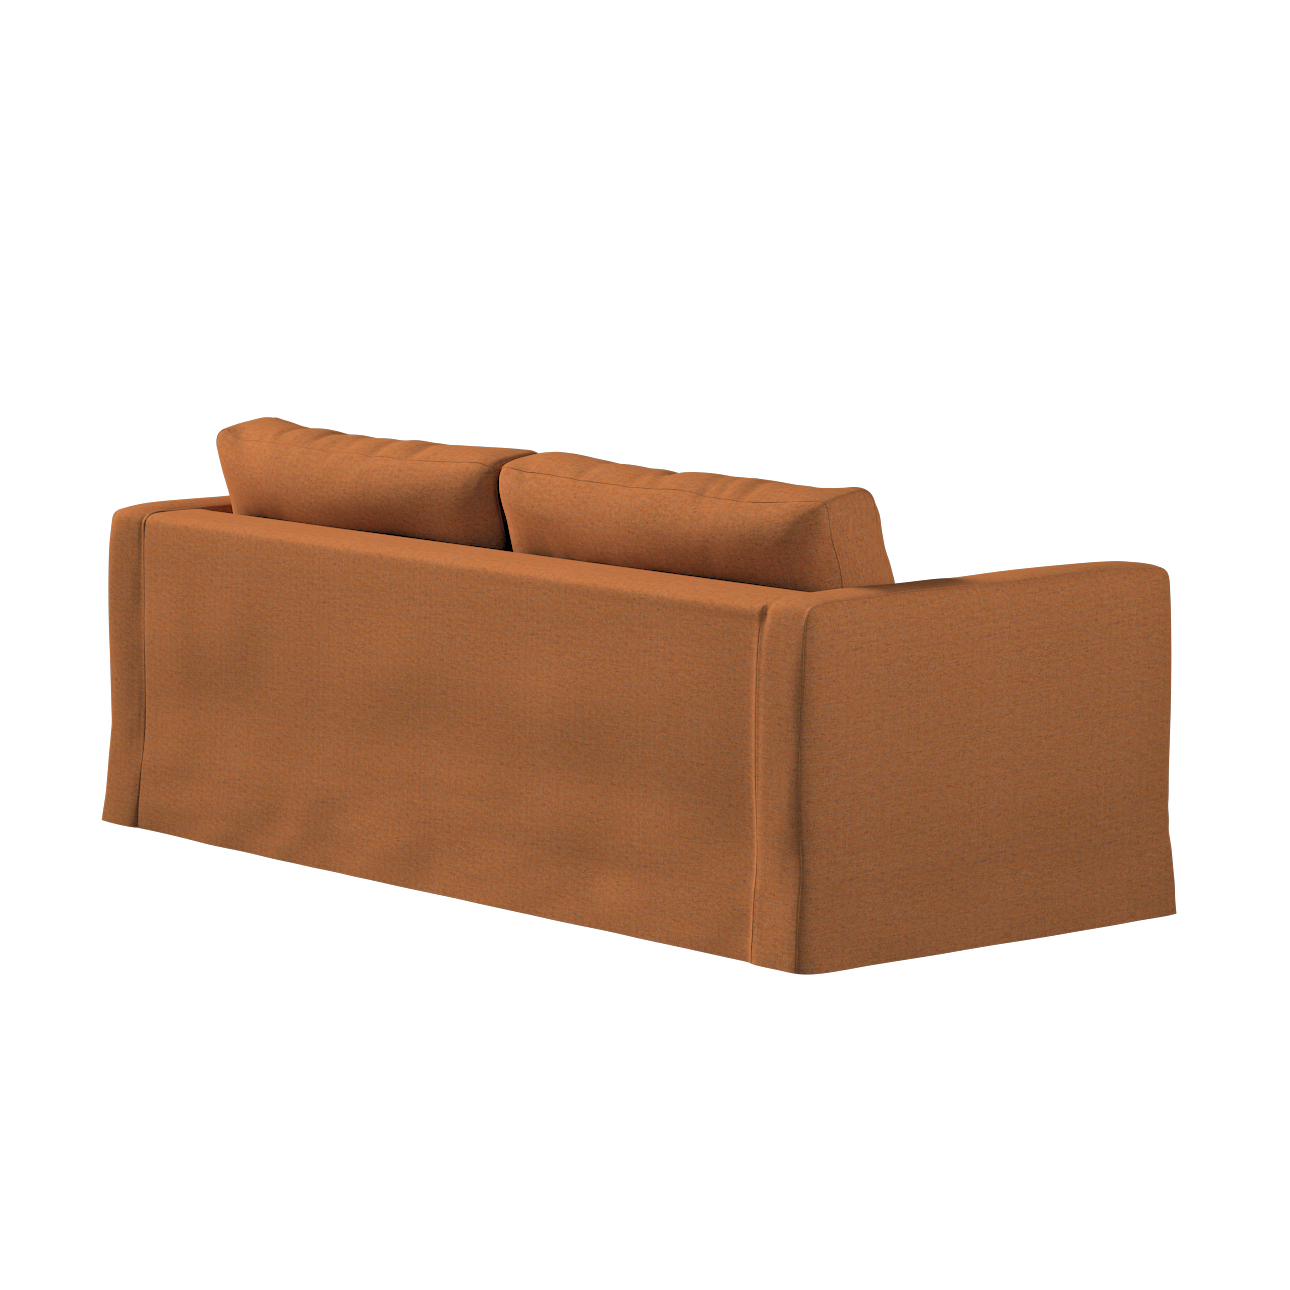 Bezug für Karlstad 3-Sitzer Sofa nicht ausklappbar, lang, orange, Bezug für günstig online kaufen